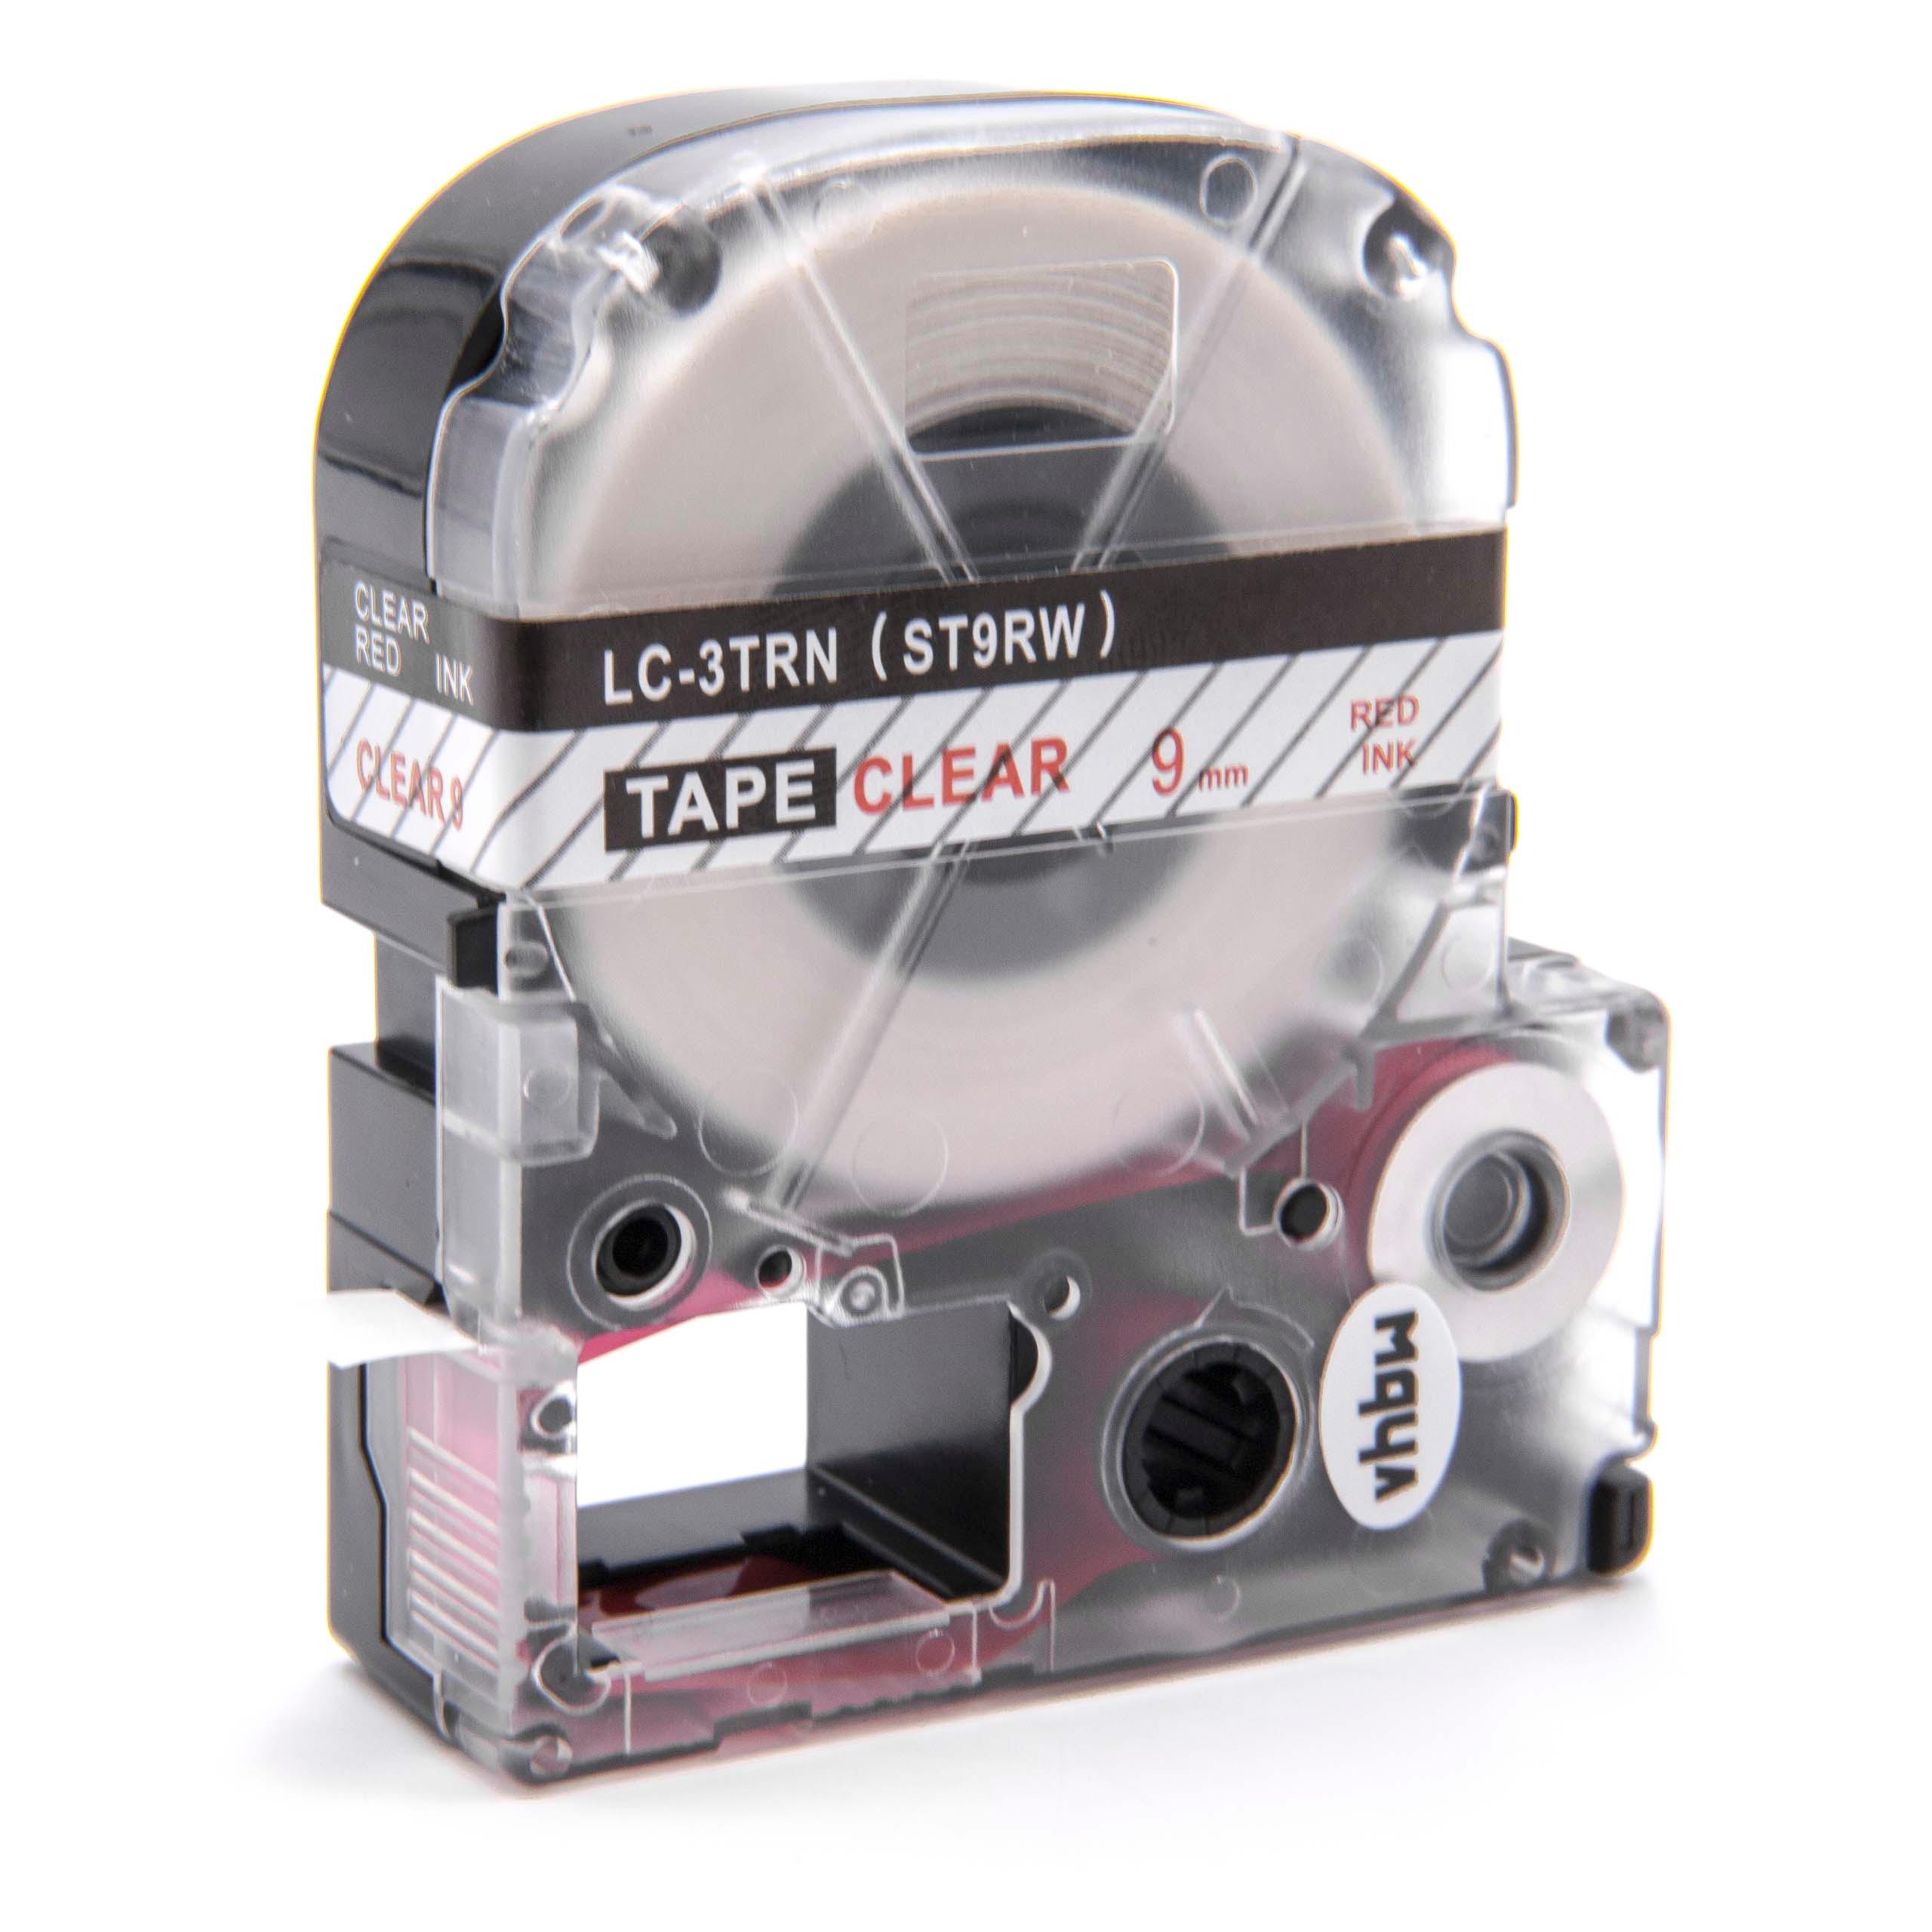 Cassette à ruban remplace Epson LC-3TRN - 9mm lettrage Rouge ruban Transparent